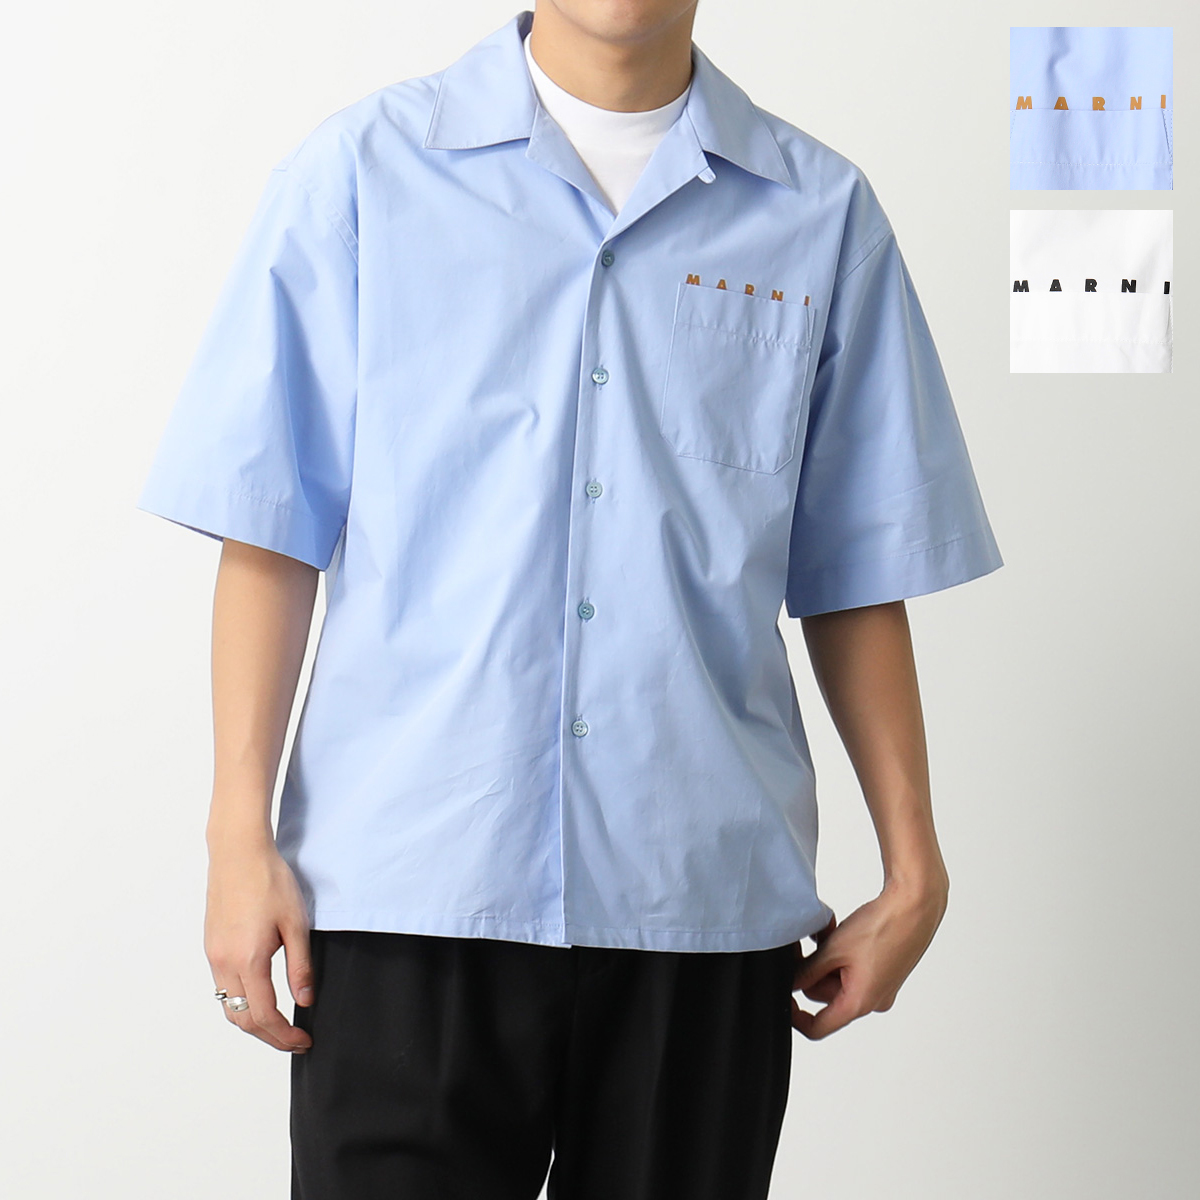 MARNI】マルニ ボーリングシャツ オープンカラー サイズ:48 (新品 